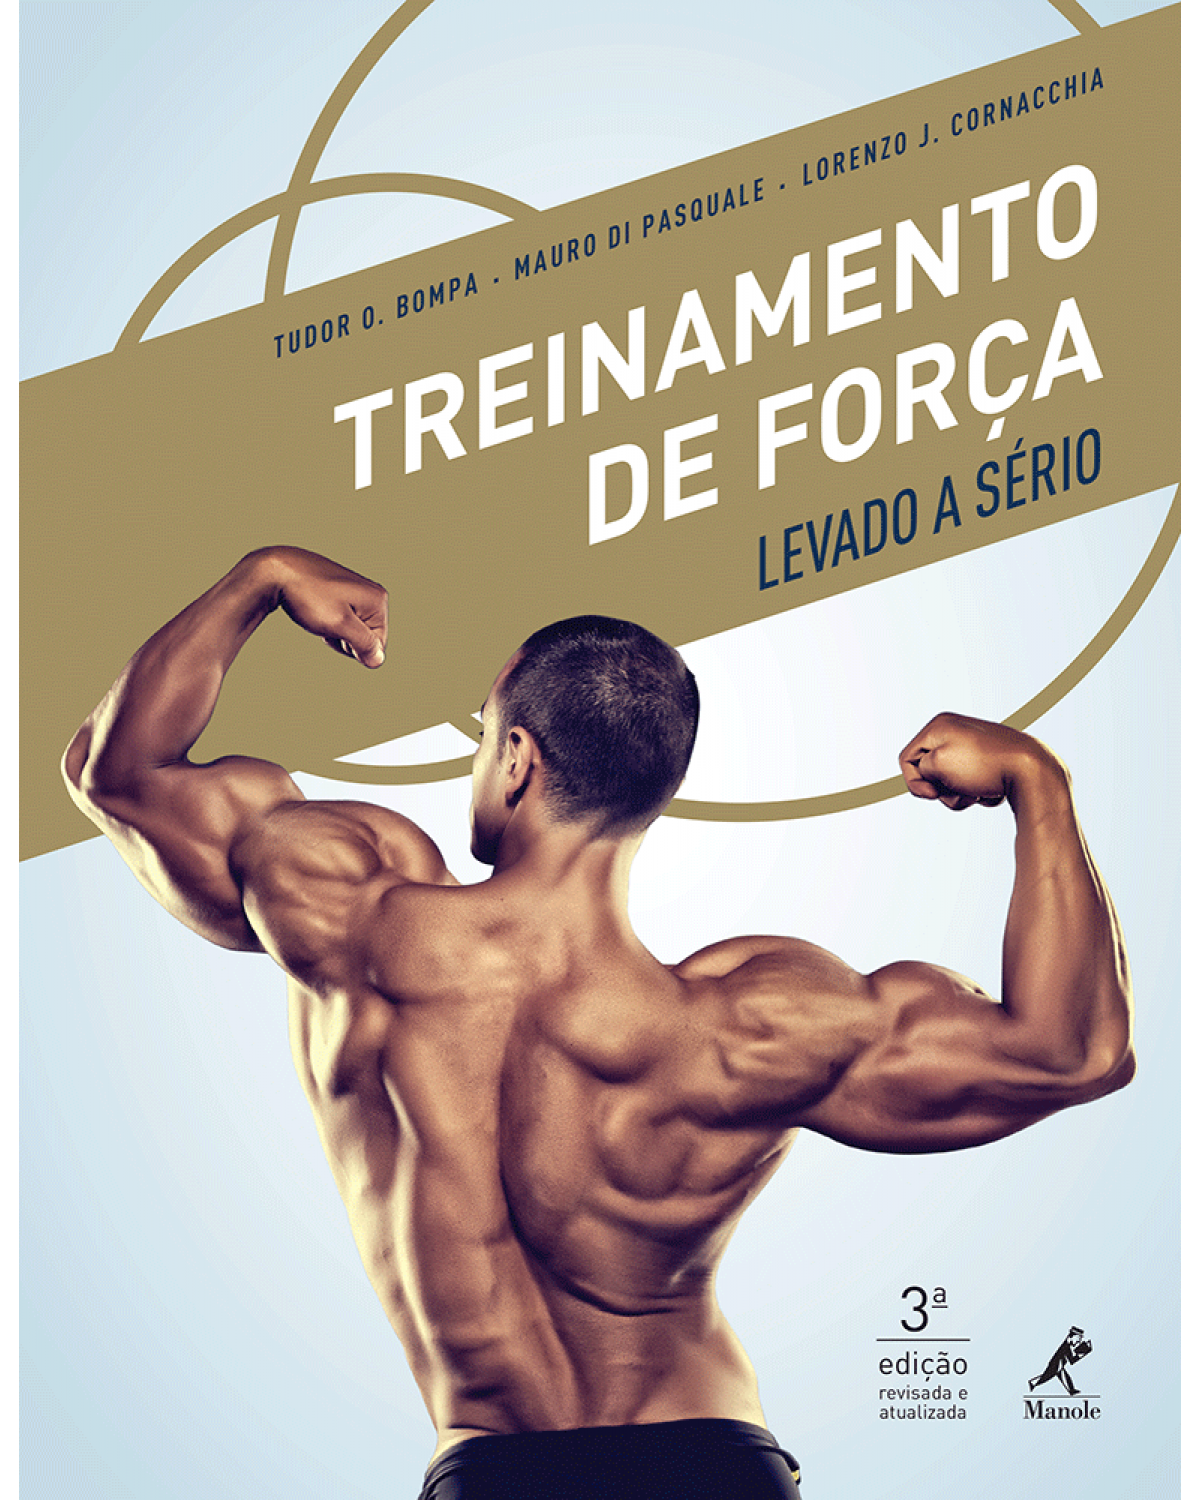 Treinamento de força levado a sério - 3ª Edição | 2015